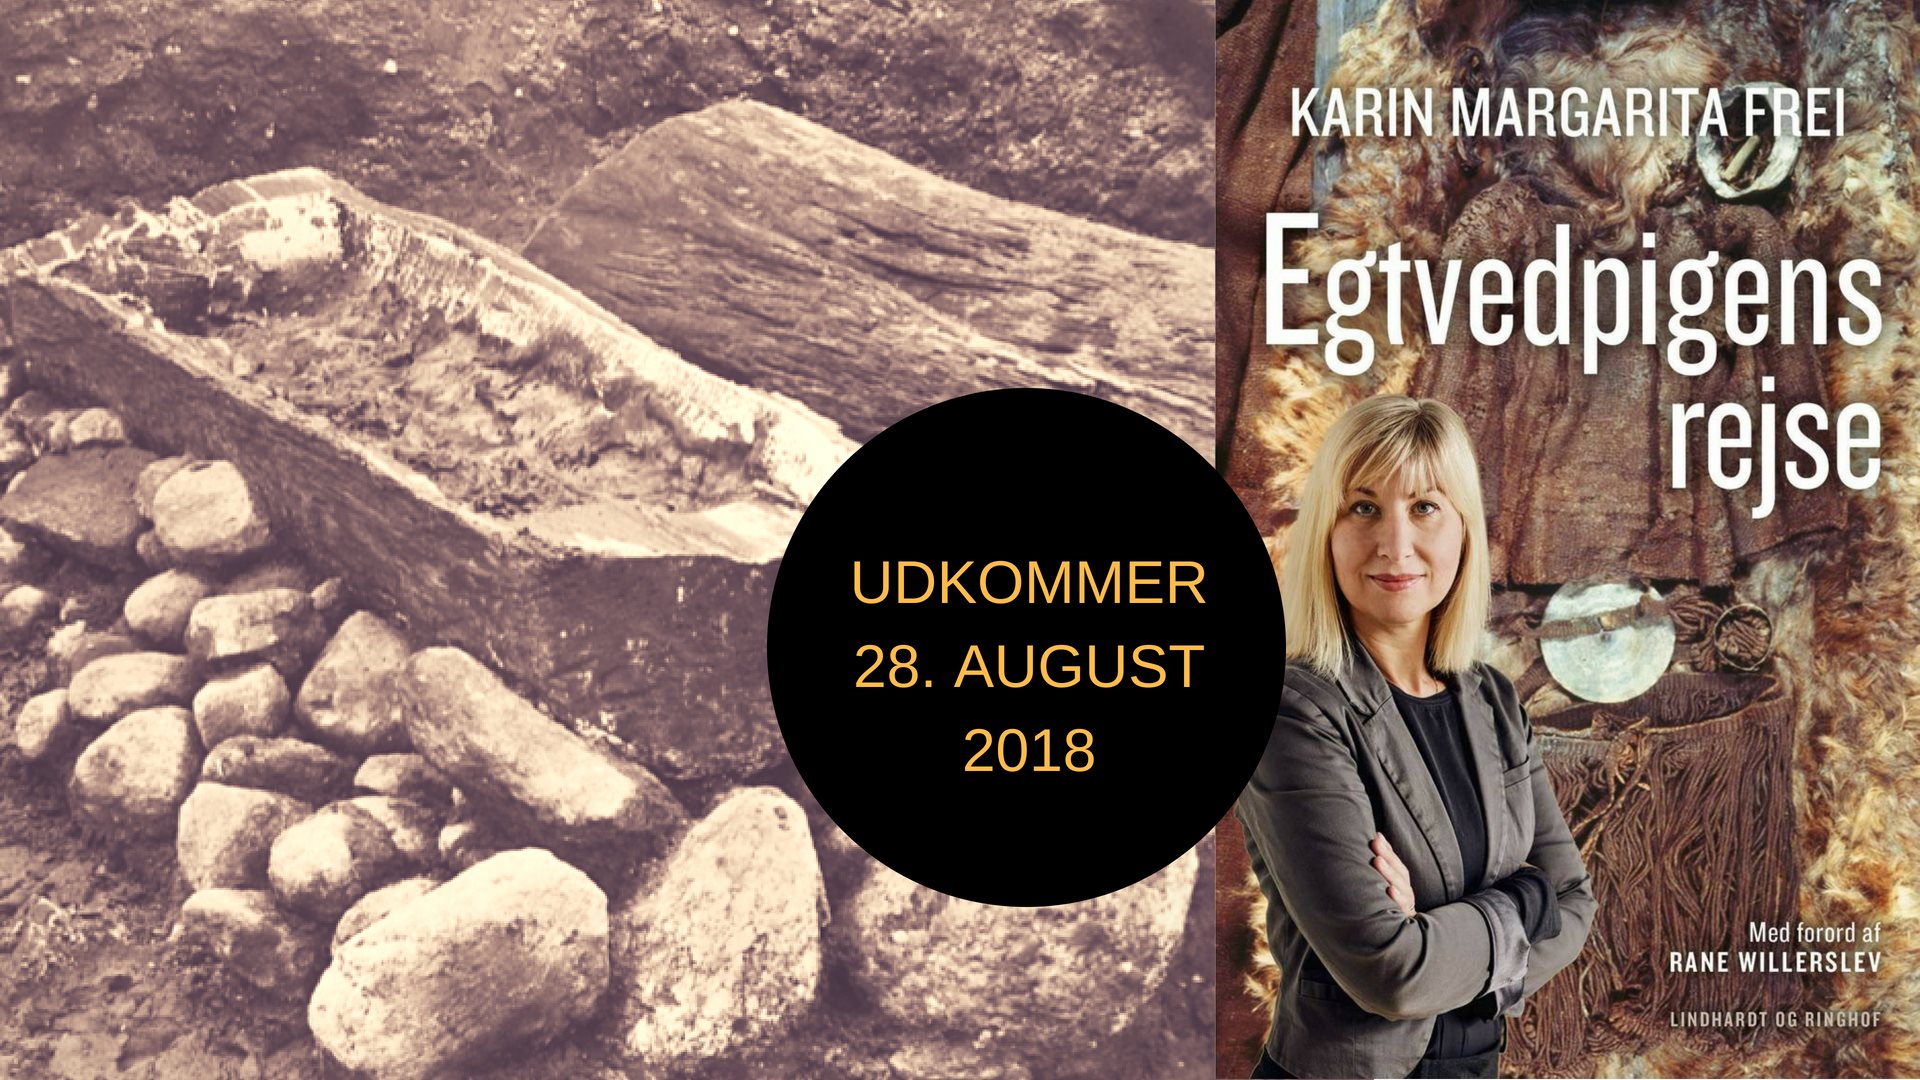 Egtvedpigen, Karin Frei, Nationalmuseet, bronzealderen, oldtidsfund